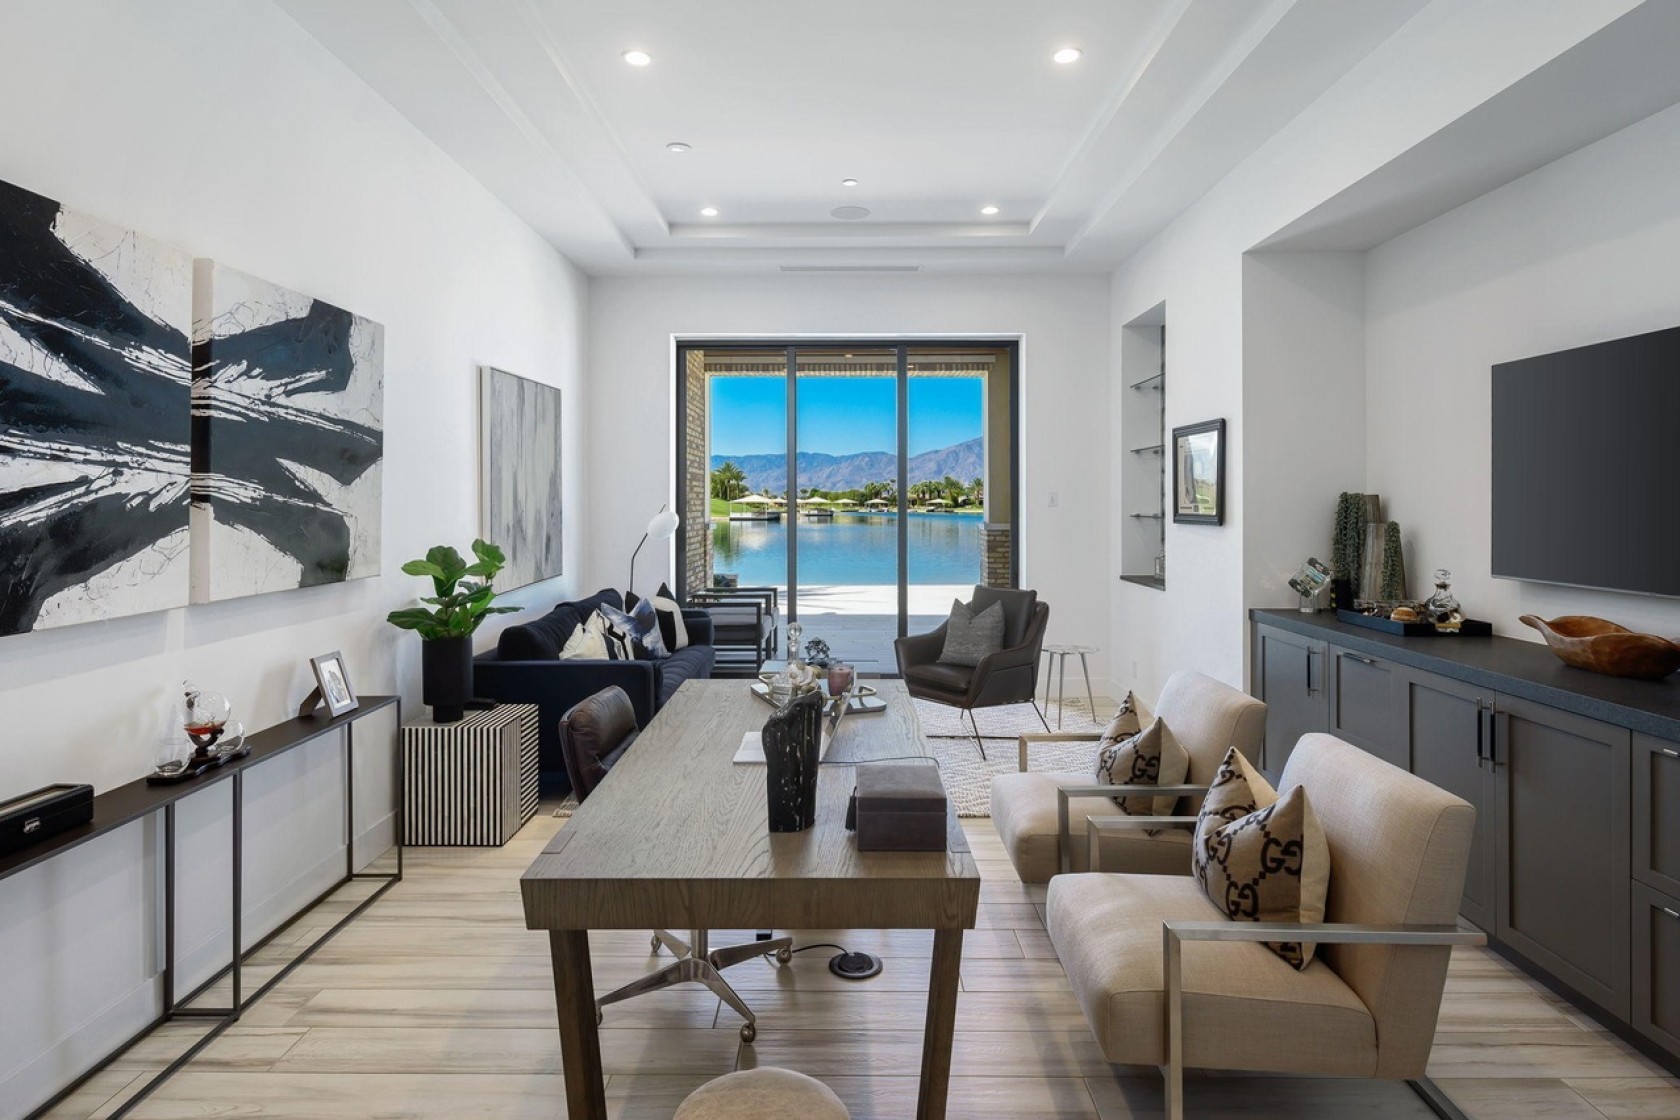 Tyga compra mansão à beira-mar por mais de R$ 21 milhões (Foto: Divulgação)